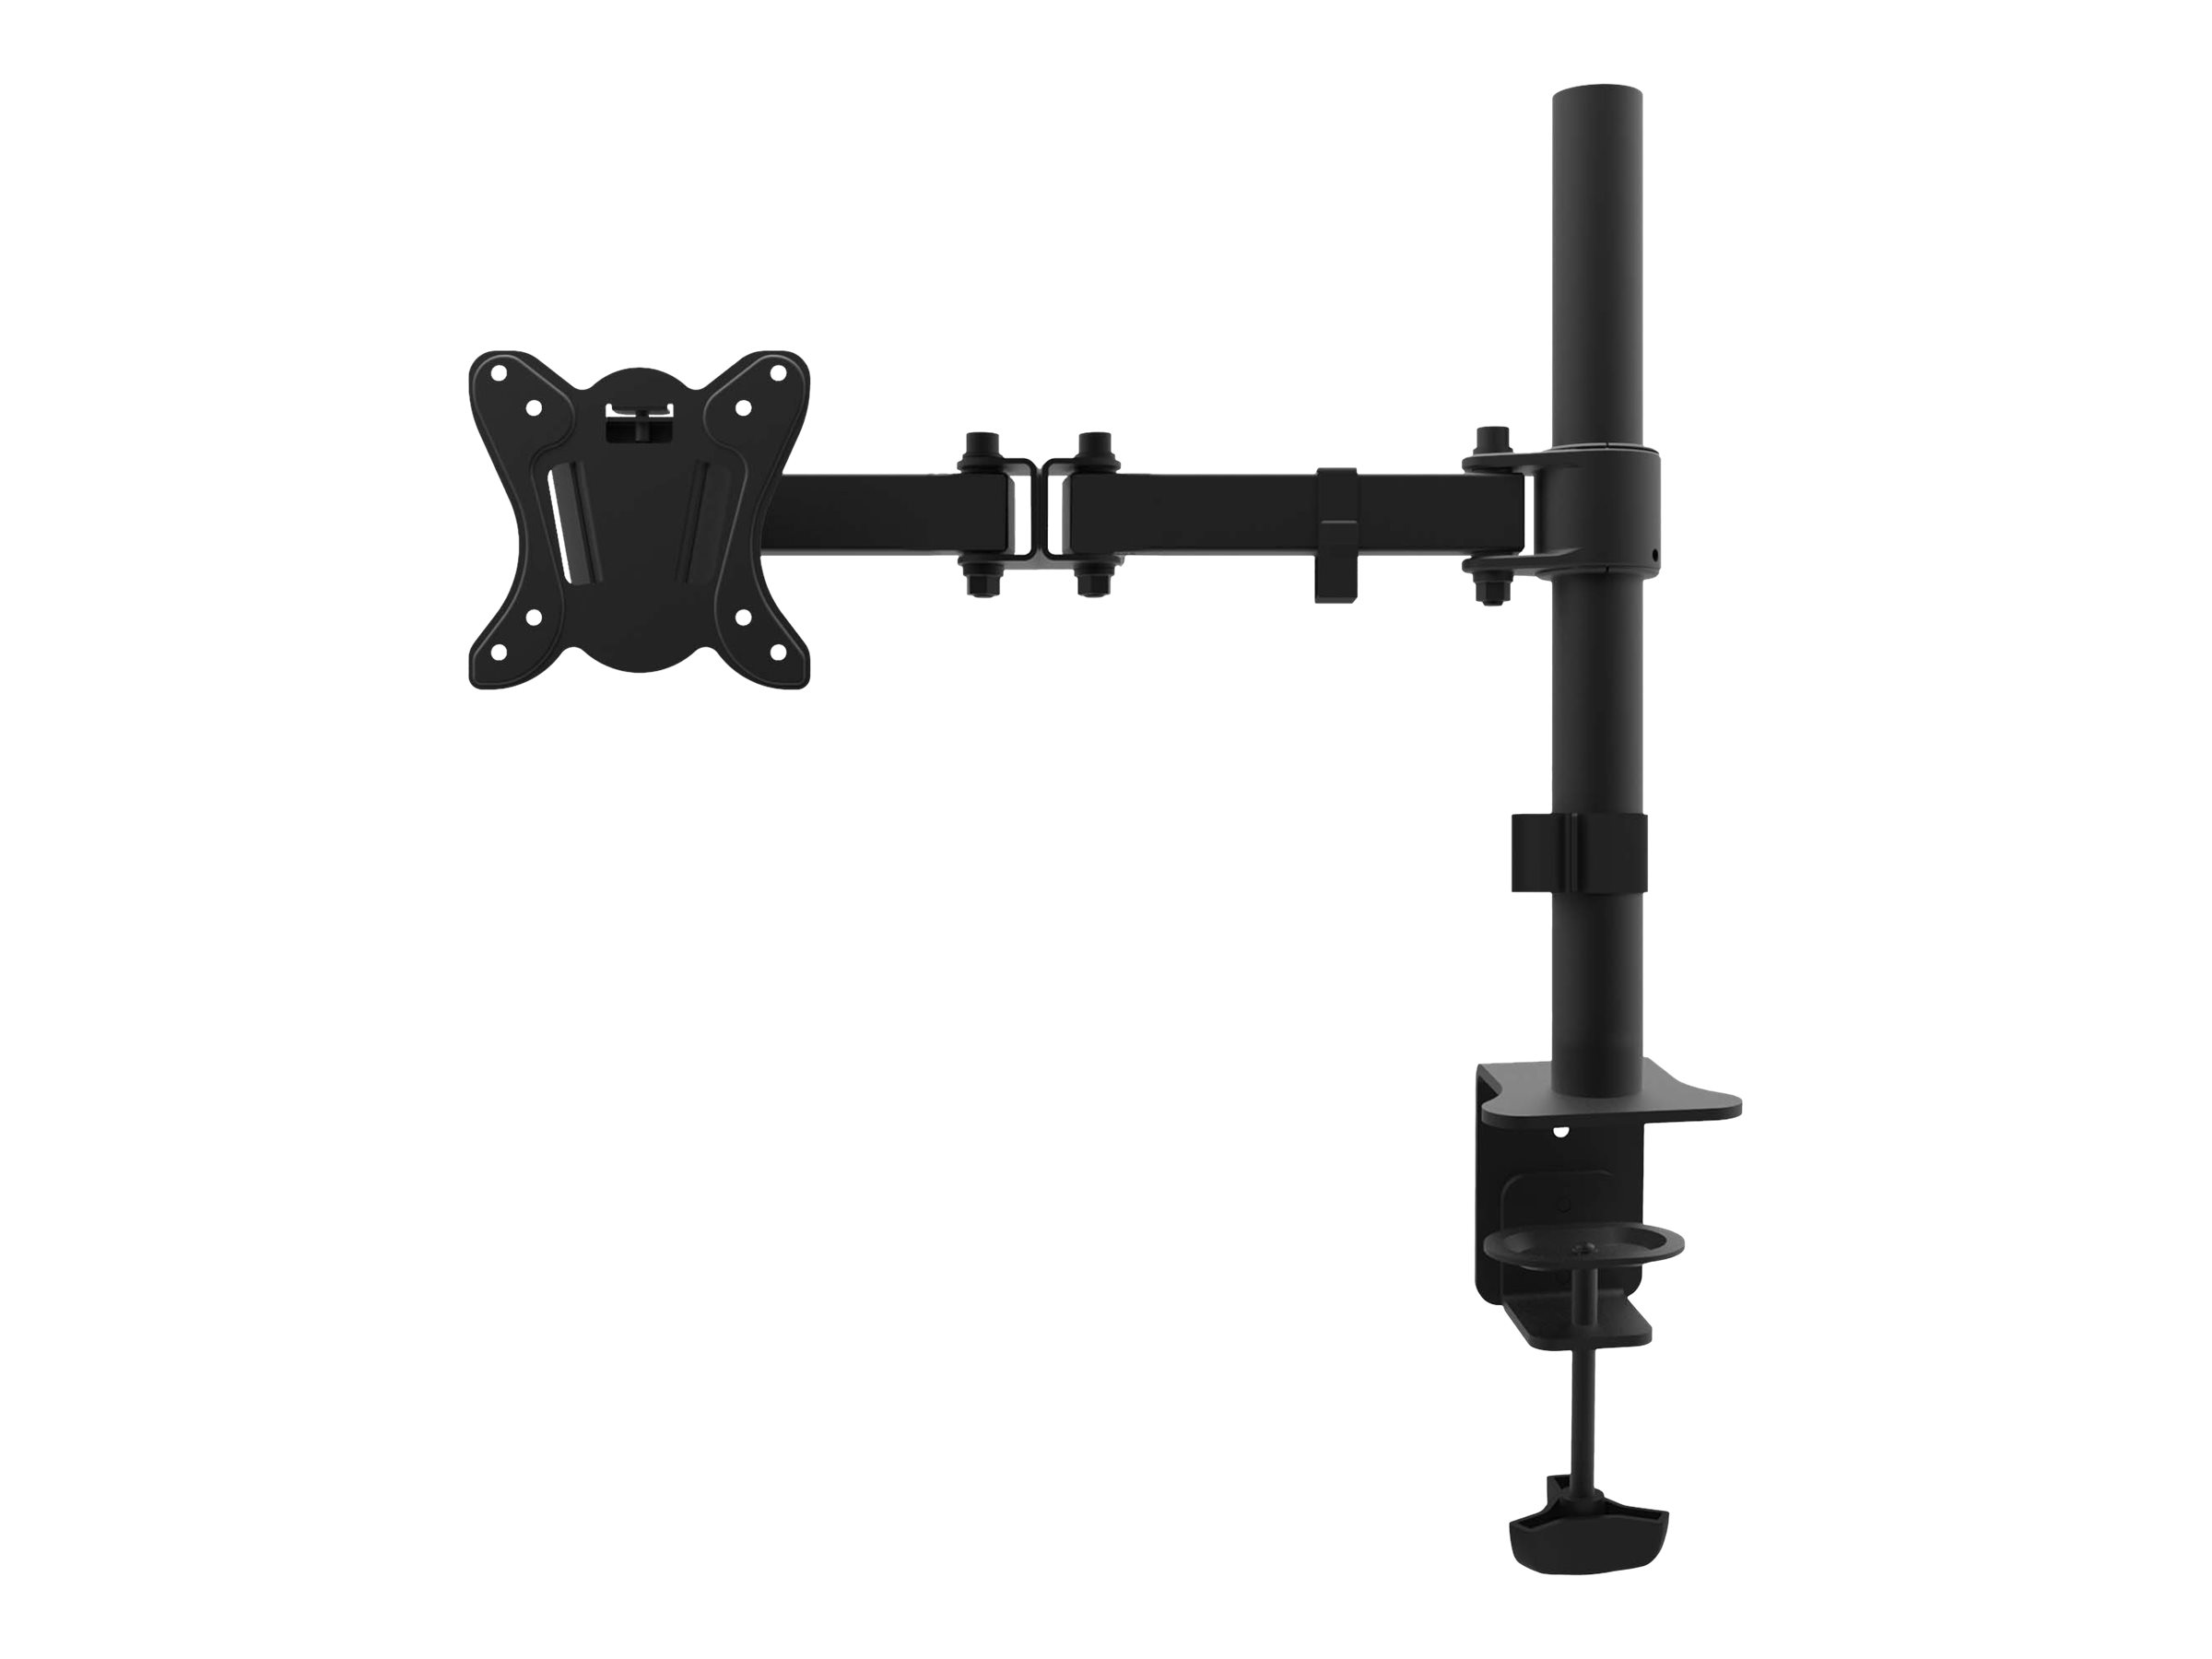 equip Monitor Desk Mount Bracket - Befestigungskit für Monitor - Kunststoff, Aluminium, Stahl - pulverbeschichtet schwarz - Bildschirmgröße: 33-68.6 cm (13"-27")